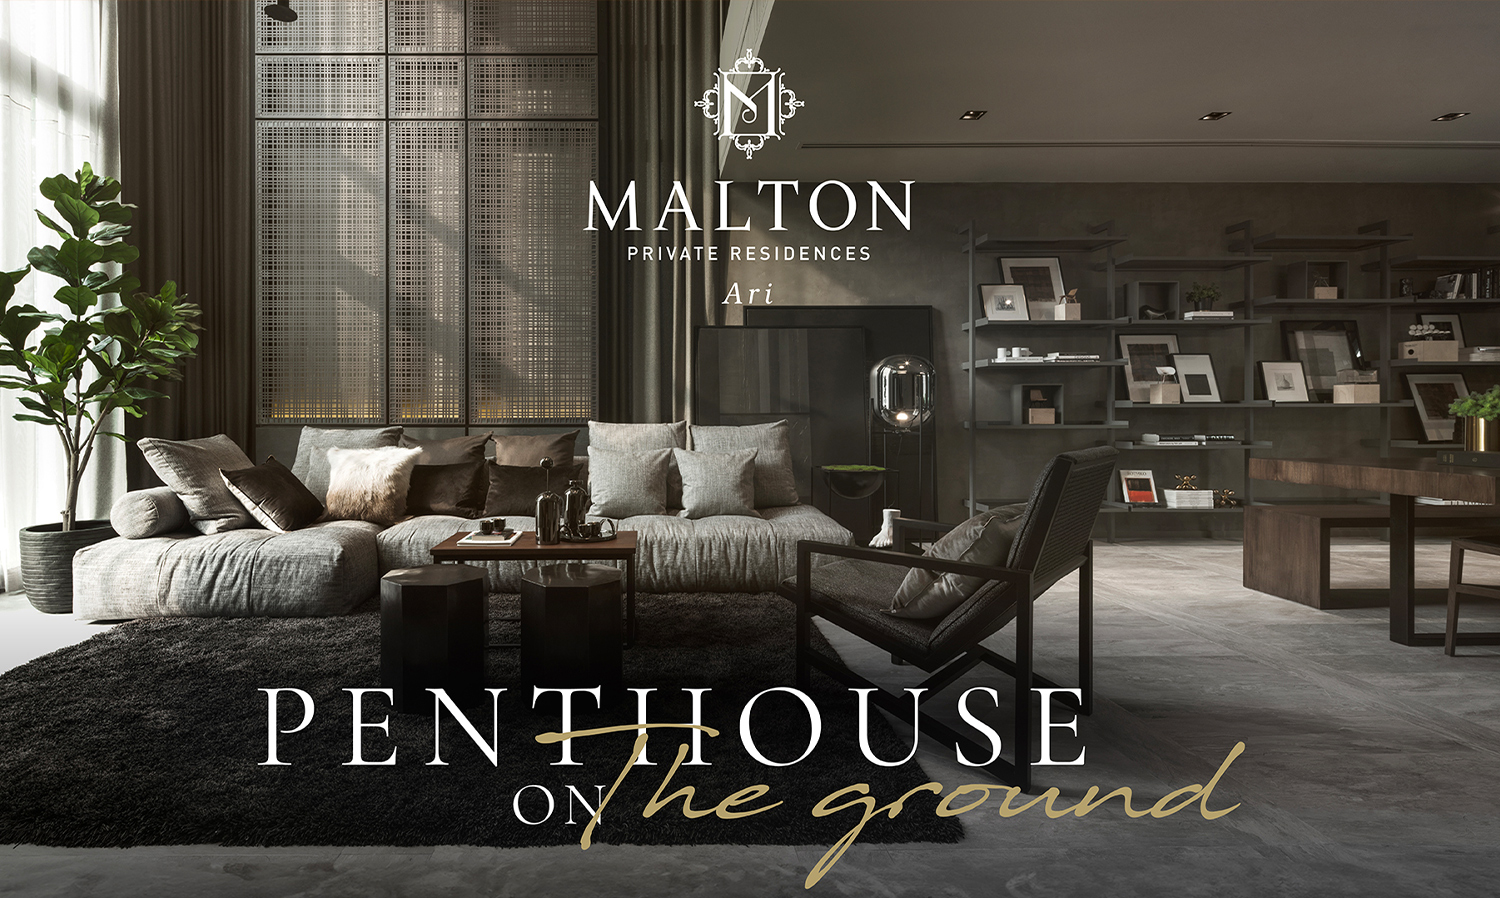 2 ยูนิต สุดท้าย! MALTON Private Residences Ari PENTHOUSE ON THE GROUND บ้านหรูใจกลางอารีย์ จาก Major Development ตกแต่งพร้อมอยู่ Branded Furniture 